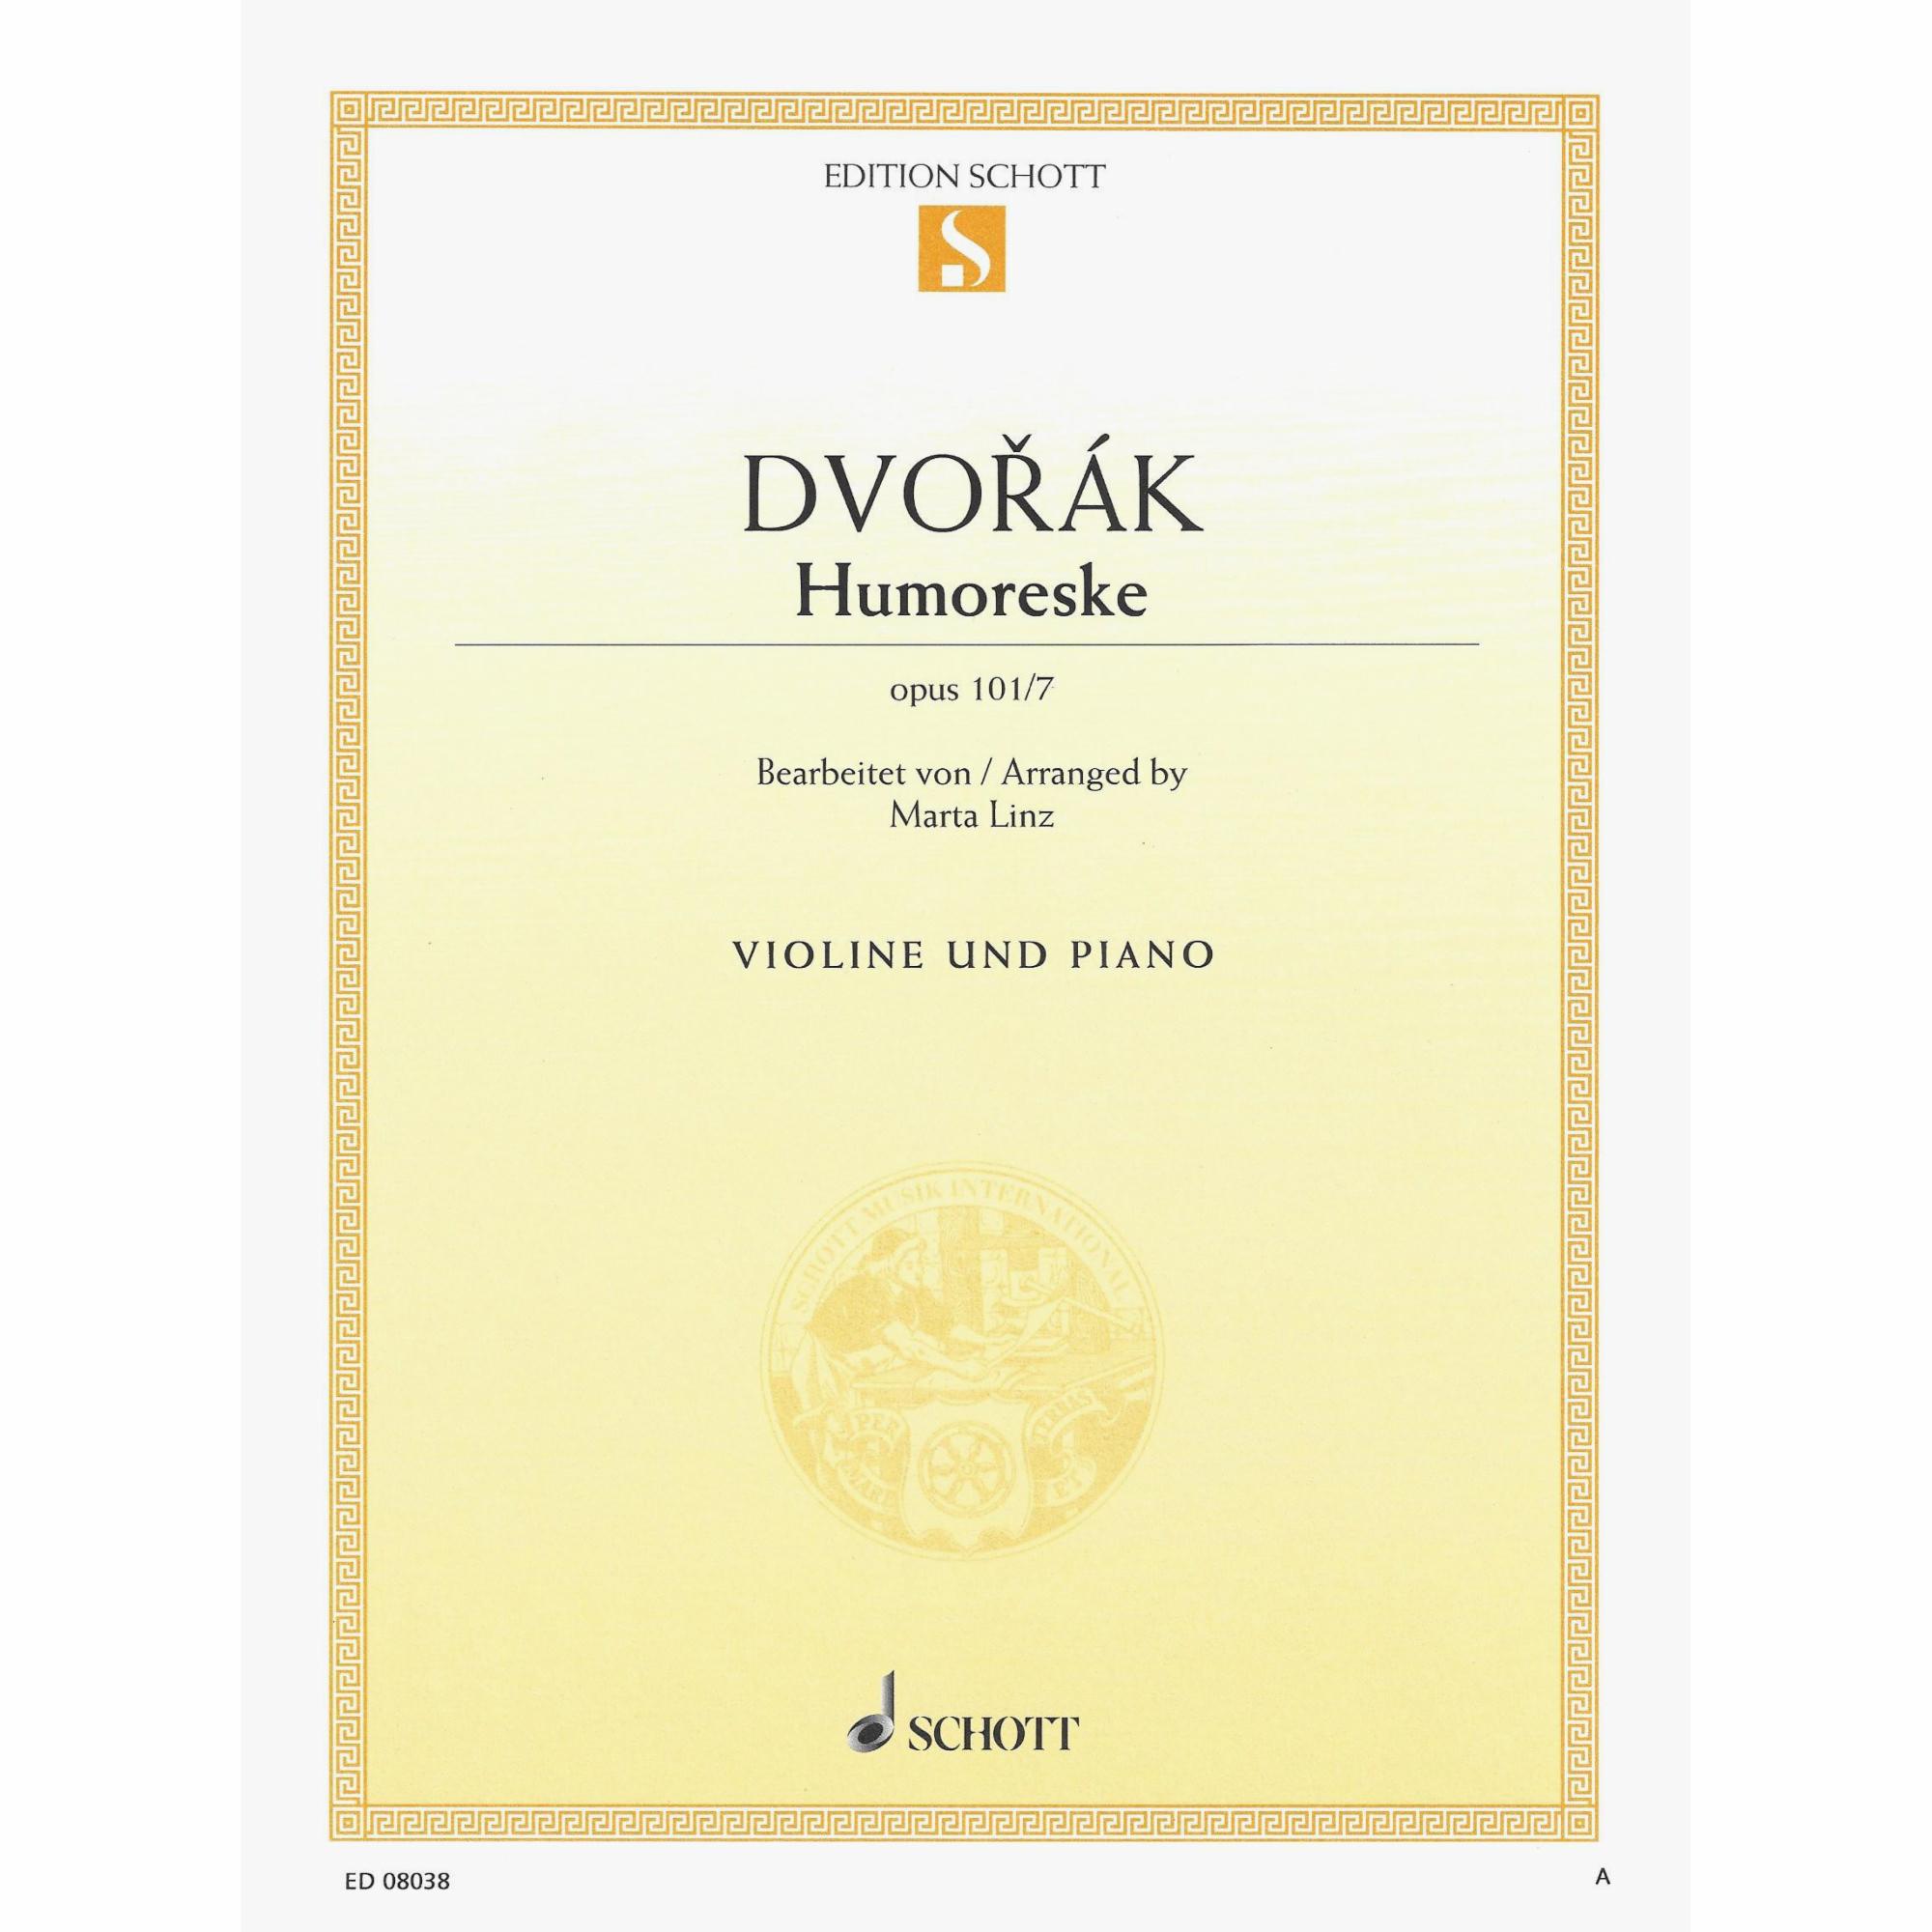 Dvorak -- Humoreske, Op. 101, No. 7 for Violin and Piano